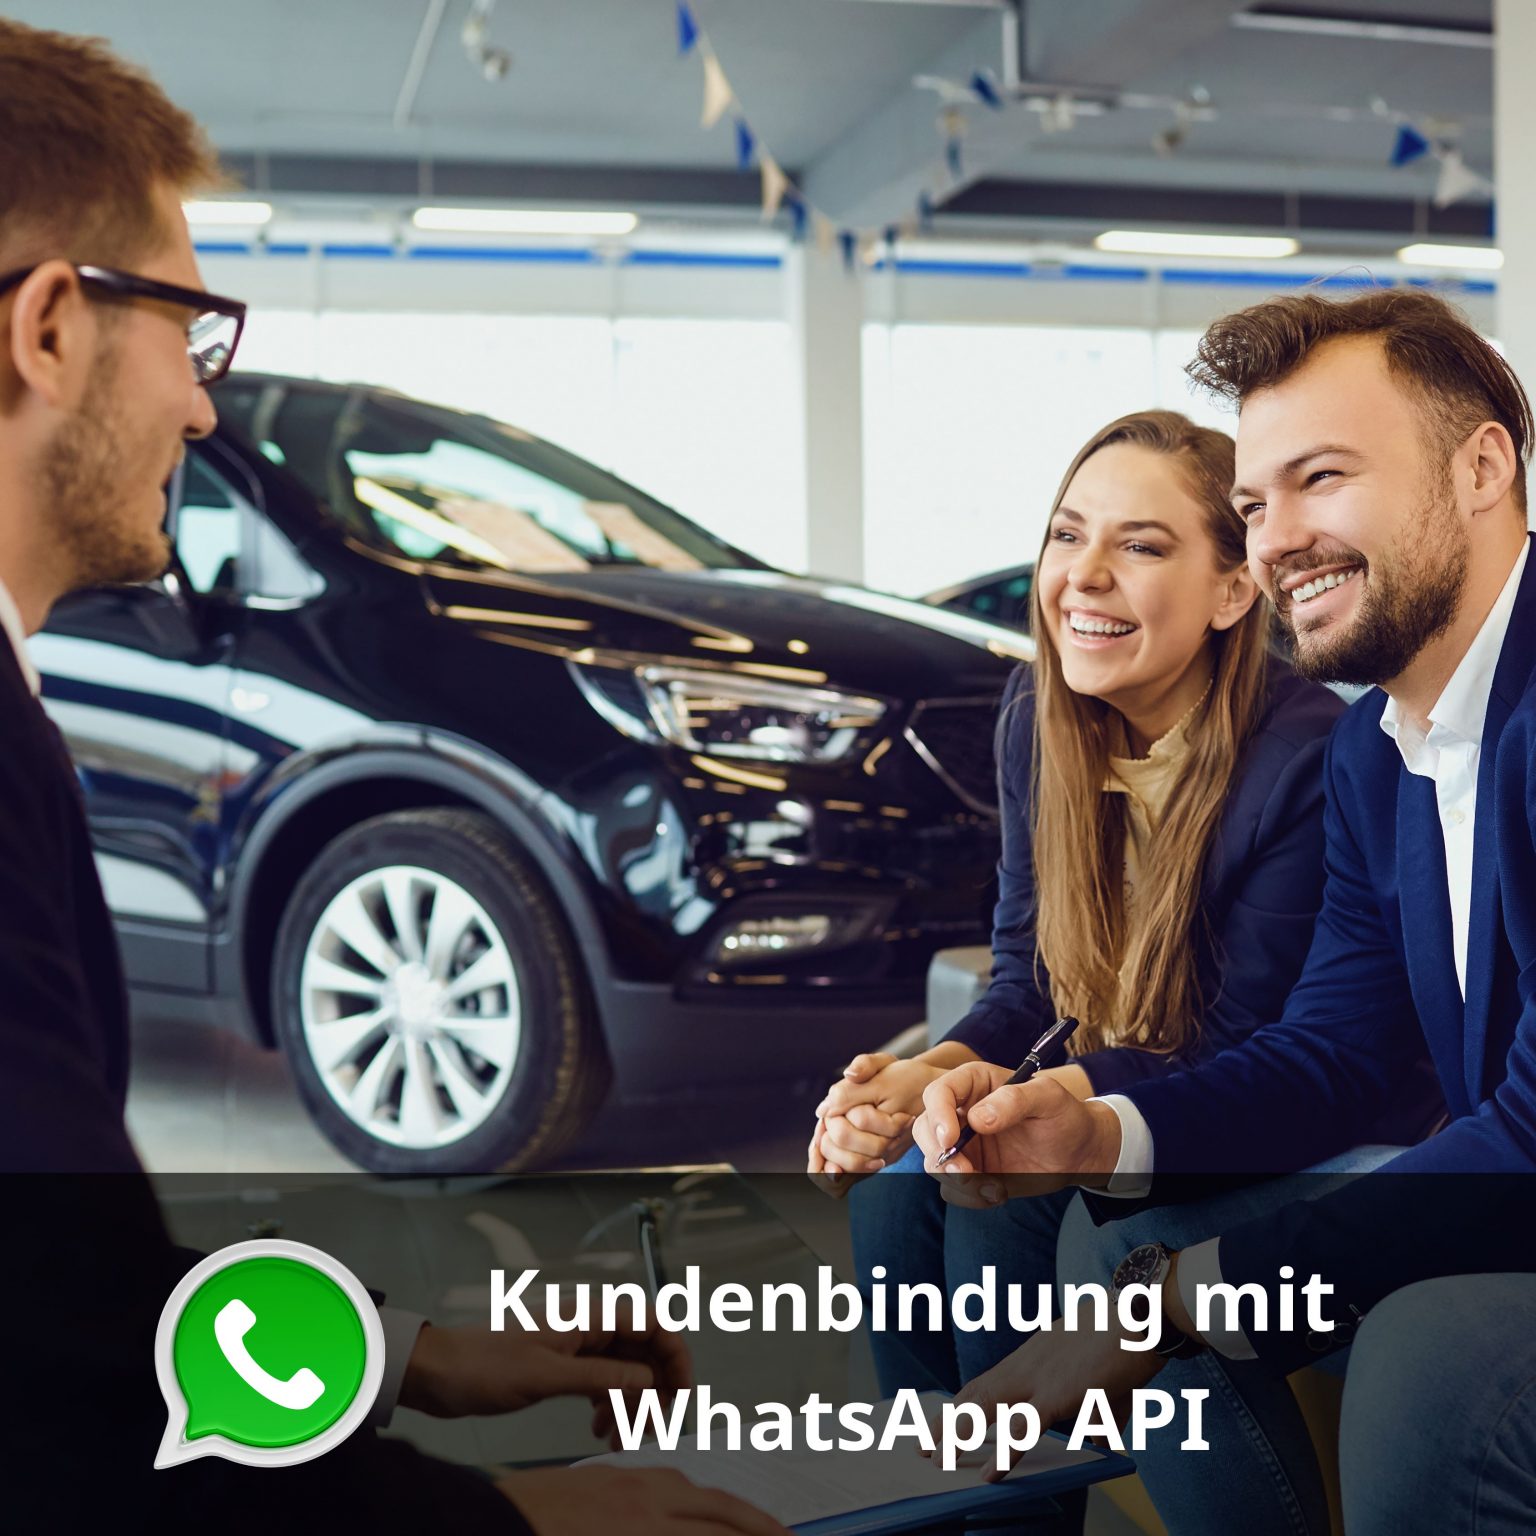 WhatsApp API für Autohäuser und Kfz-Werkstätte